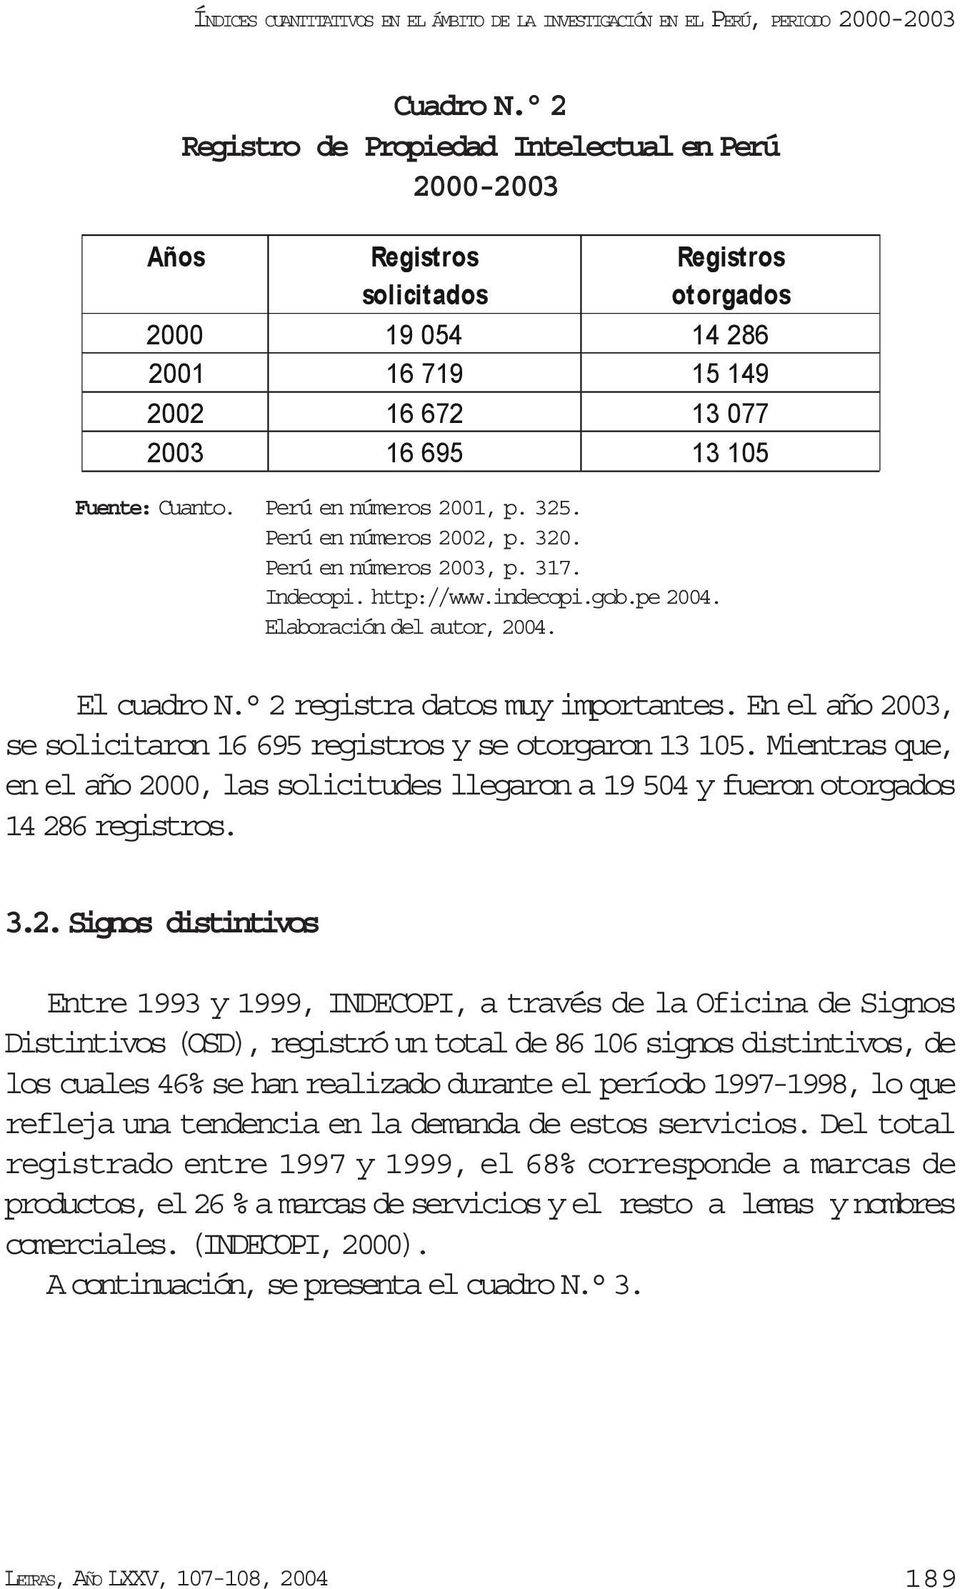 Perú en números 2002, p. 320. Perú en números 2003, p. 317. Indecopi. http://www.indecopi.gob.pe 2004. Elaboración del autor, 2004. El cuadro N. 2 registra datos muy importantes.